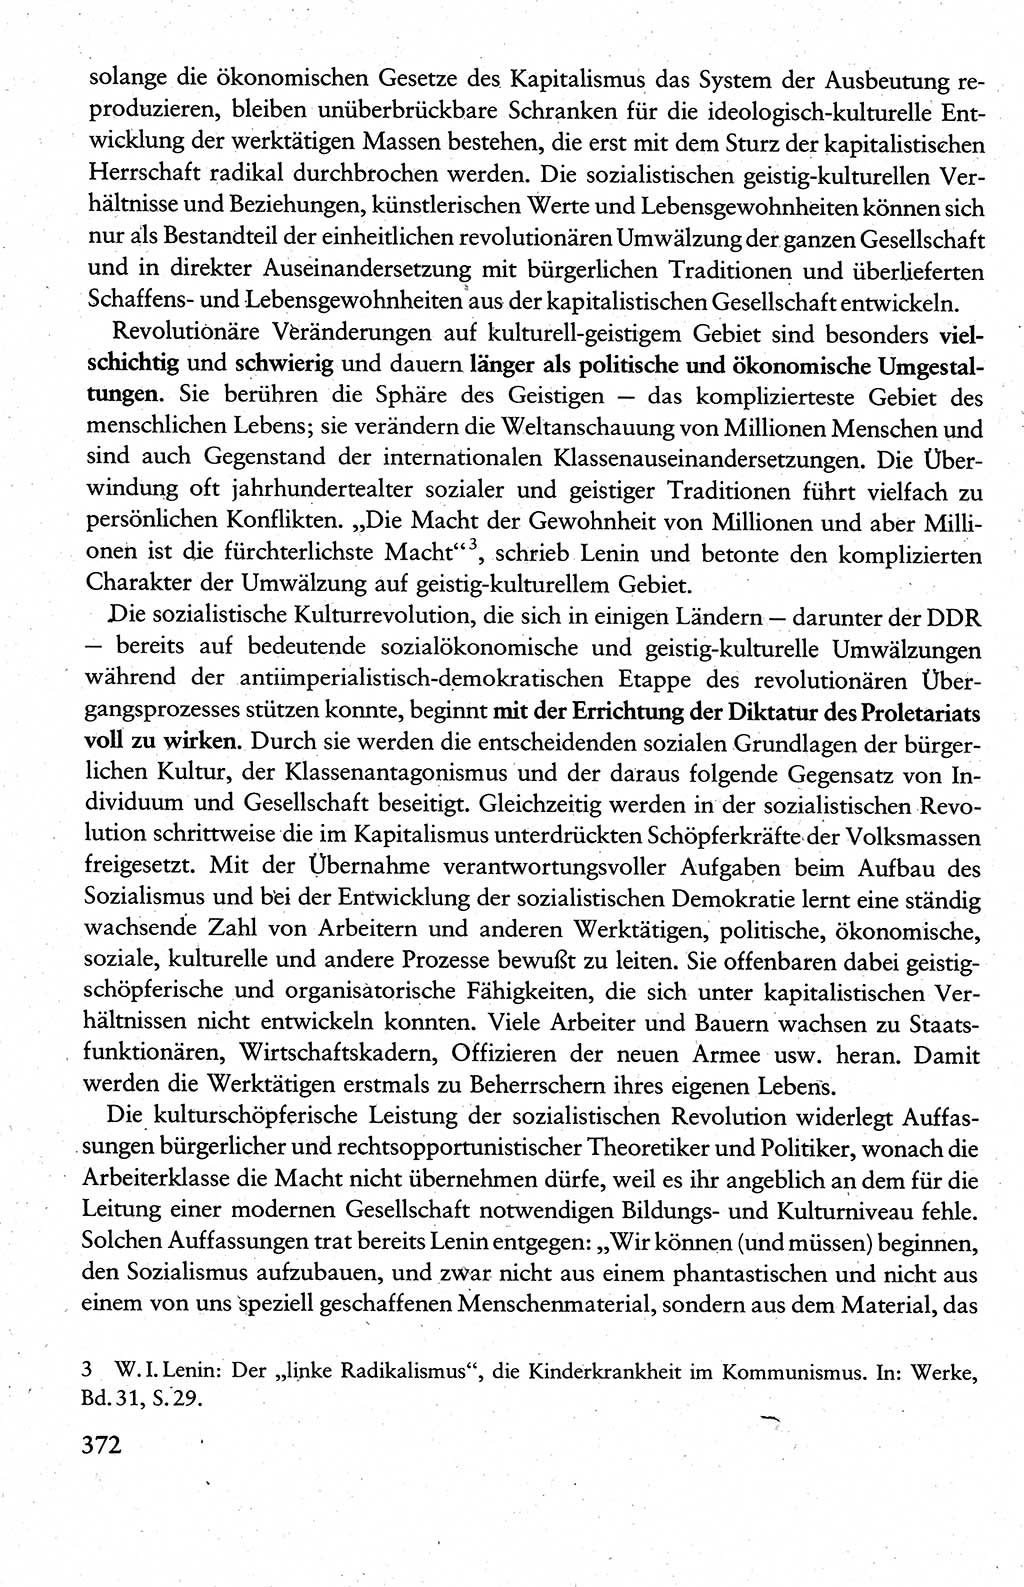 Wissenschaftlicher Kommunismus [Deutsche Demokratische Republik (DDR)], Lehrbuch für das marxistisch-leninistische Grundlagenstudium 1983, Seite 372 (Wiss. Komm. DDR Lb. 1983, S. 372)